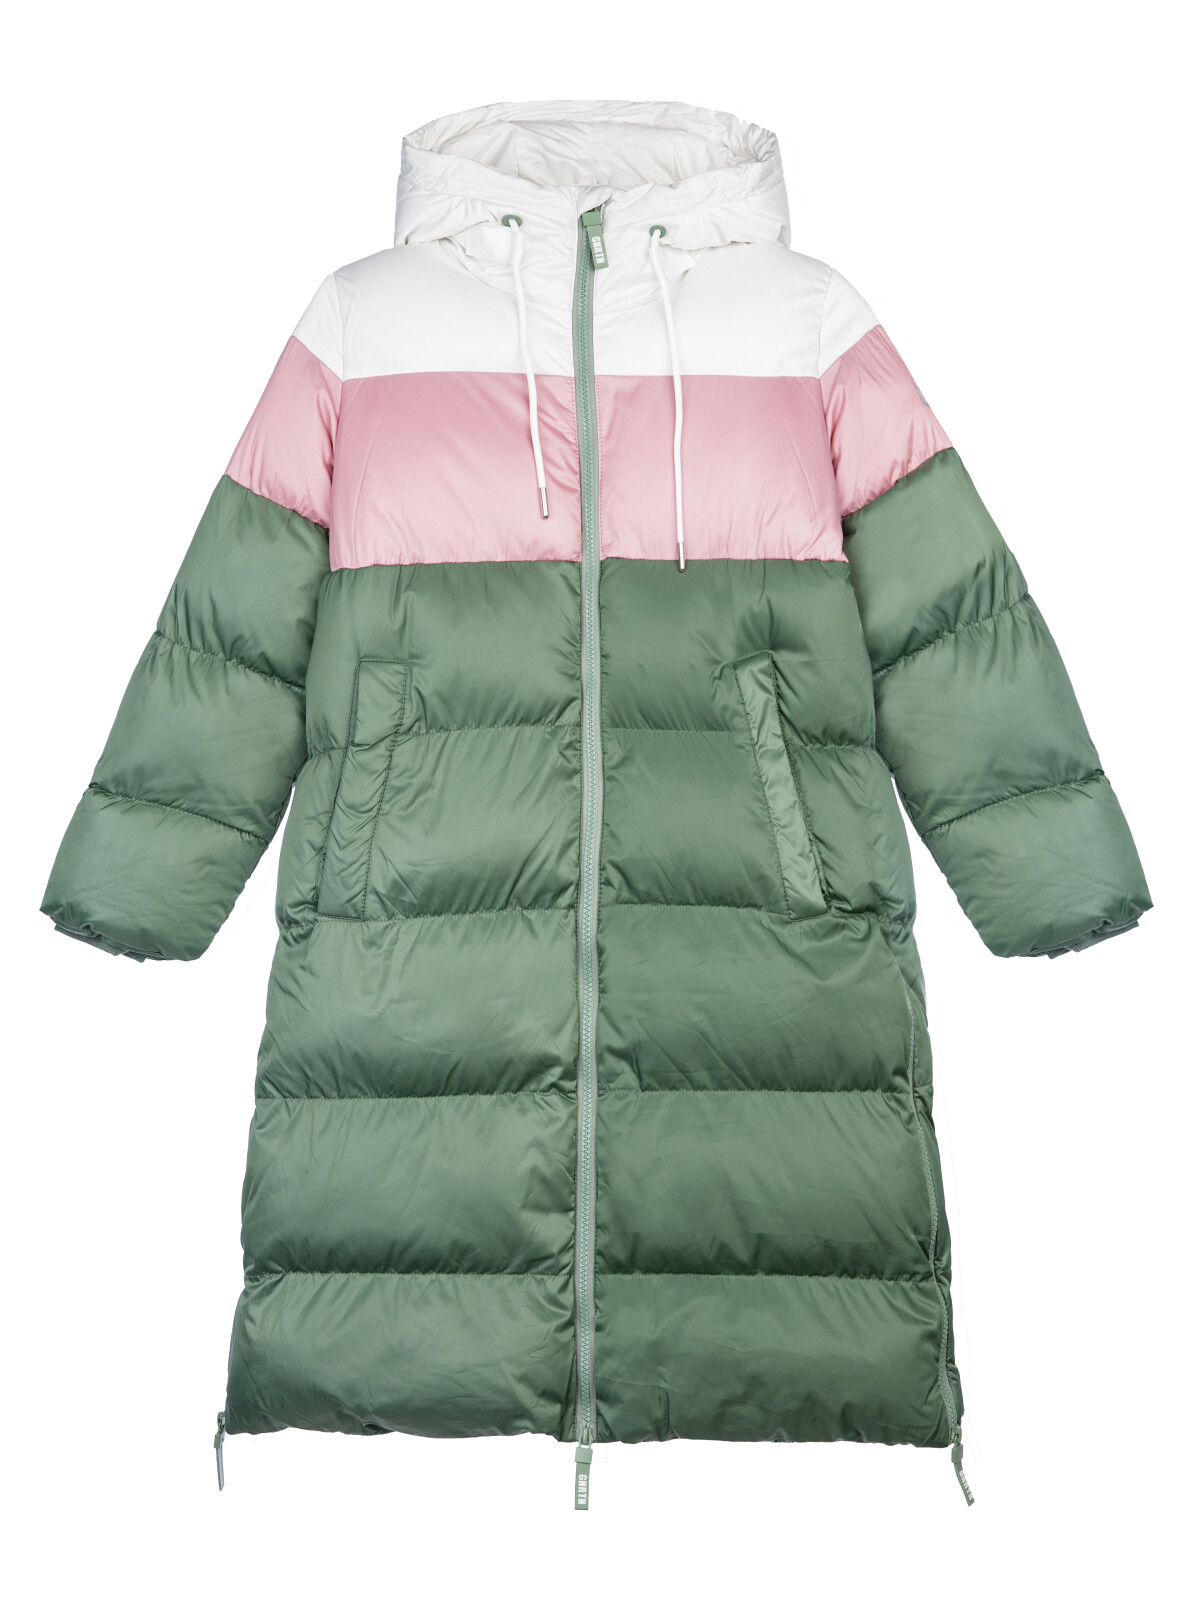 Пальто текстильное для девочек PlayToday, серебро,коричневый,темно-зеленый, 170